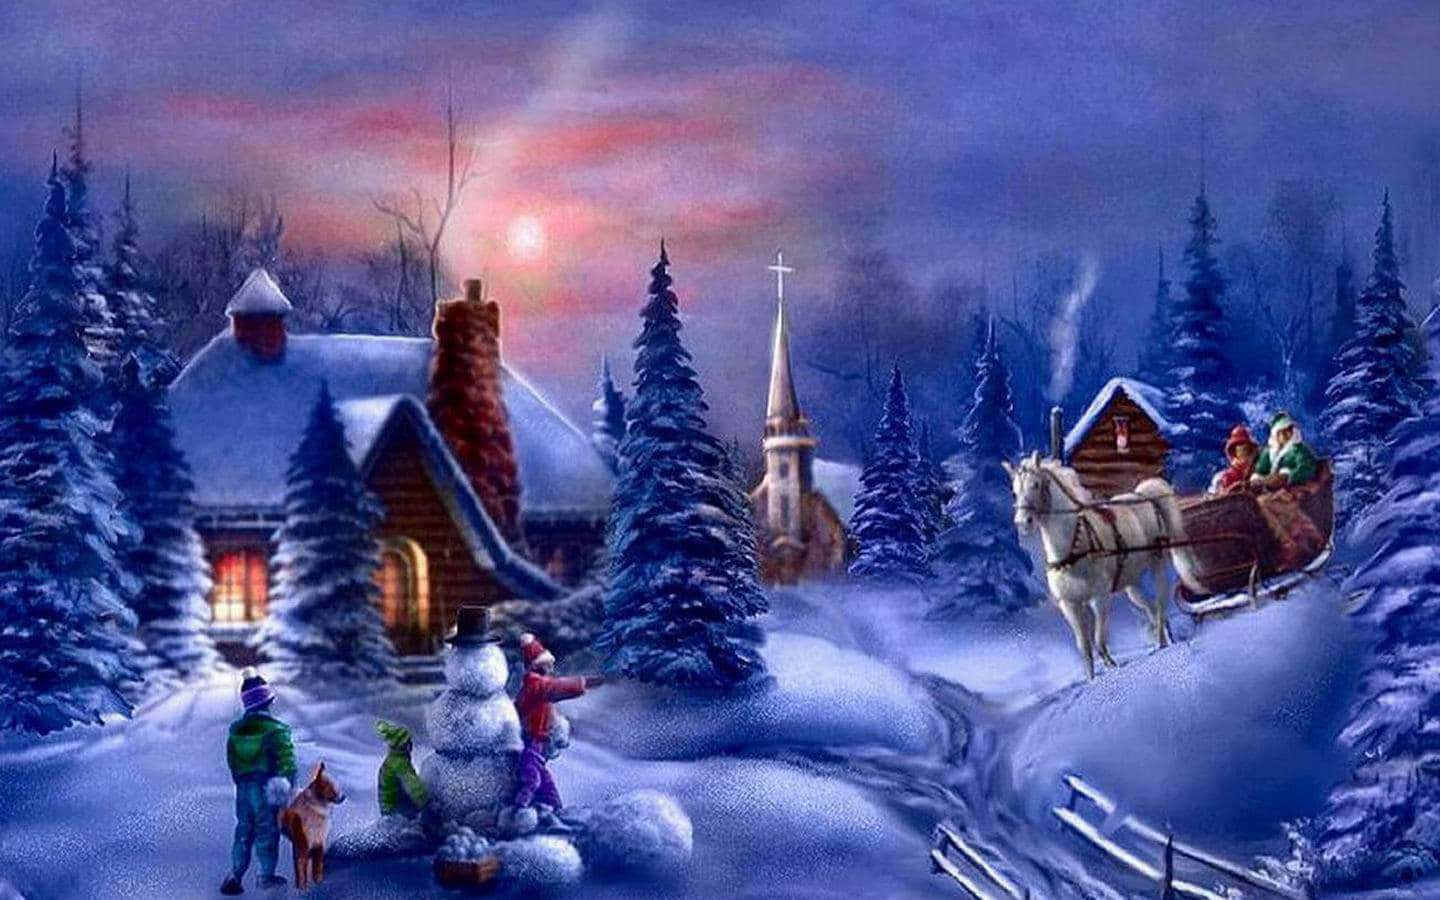 Unsereno Paesaggio Invernale Coperto Di Neve Per Un Meraviglioso Natale